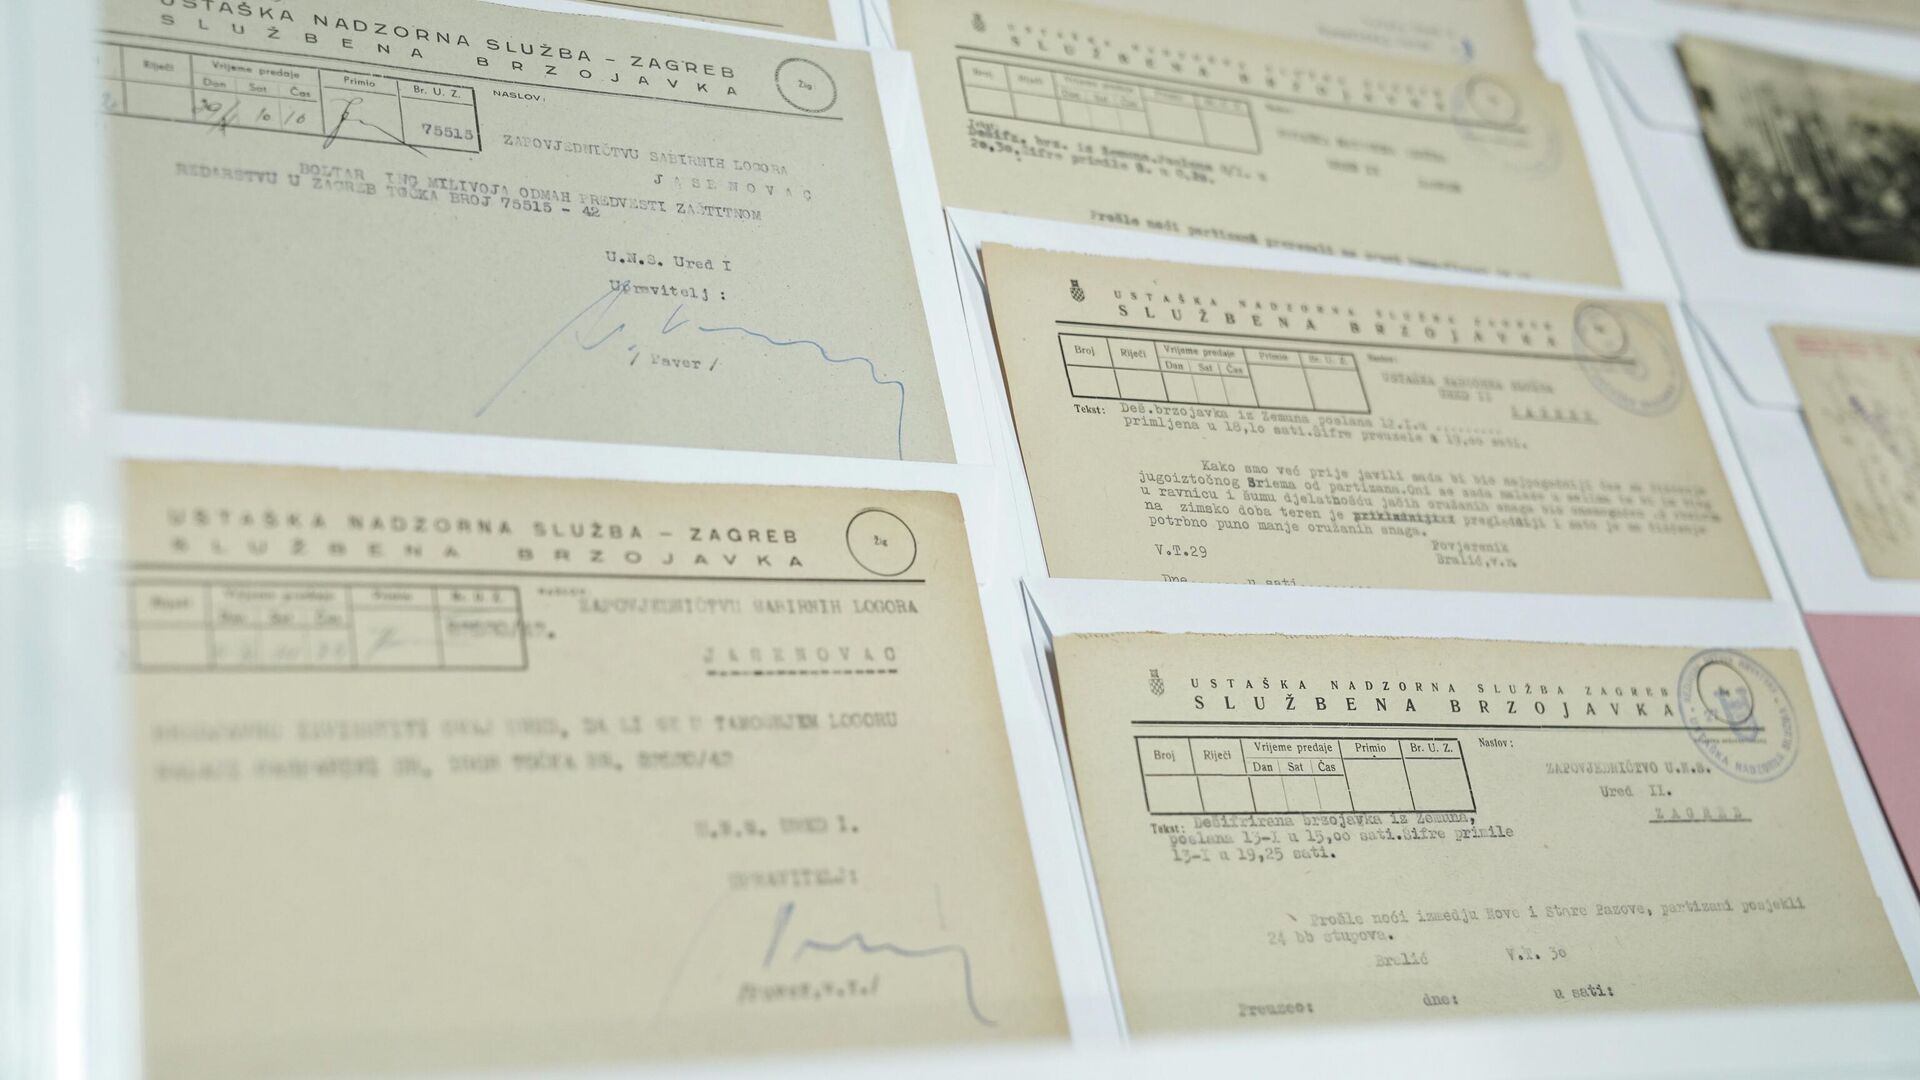 Две телеграммы раскрывают все : Опубликованы доказательства того, что в Хорватии был совершен геноцид сербов